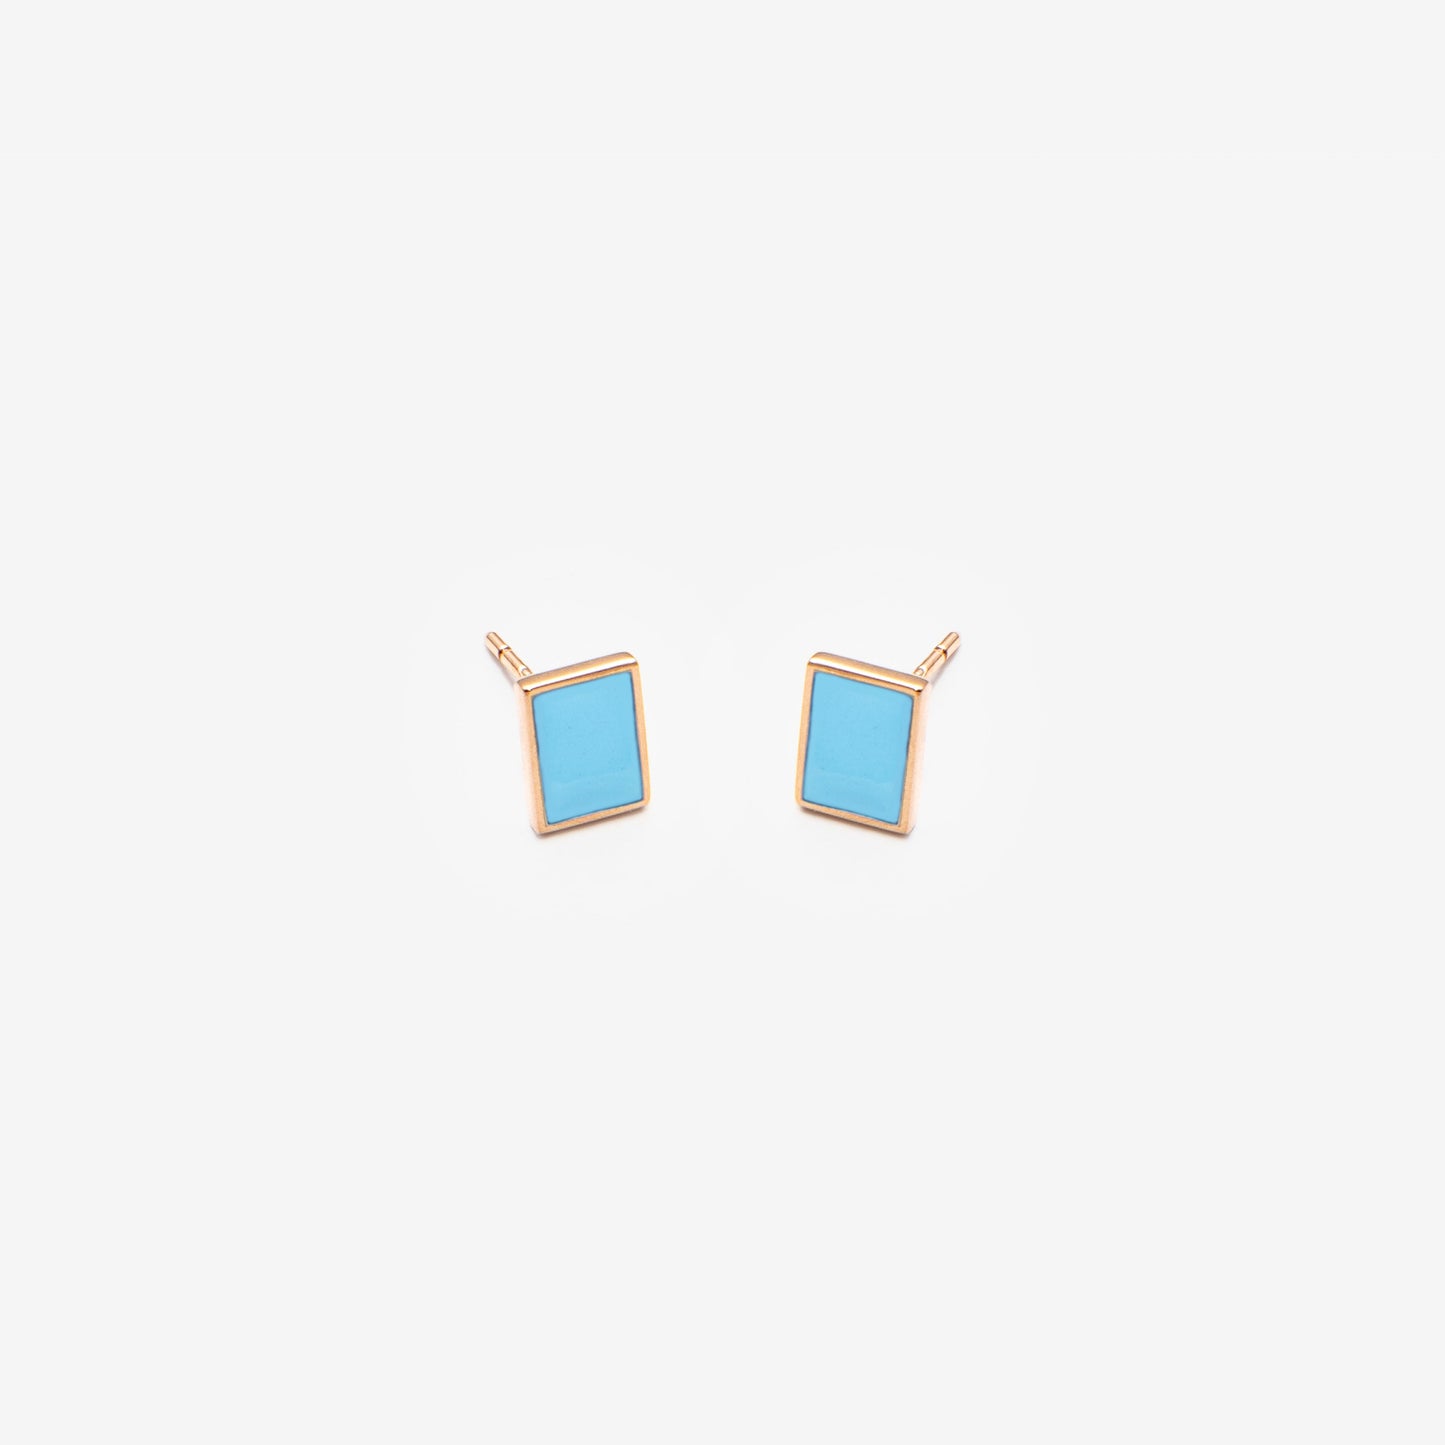 Floating rectangle light blue earrings